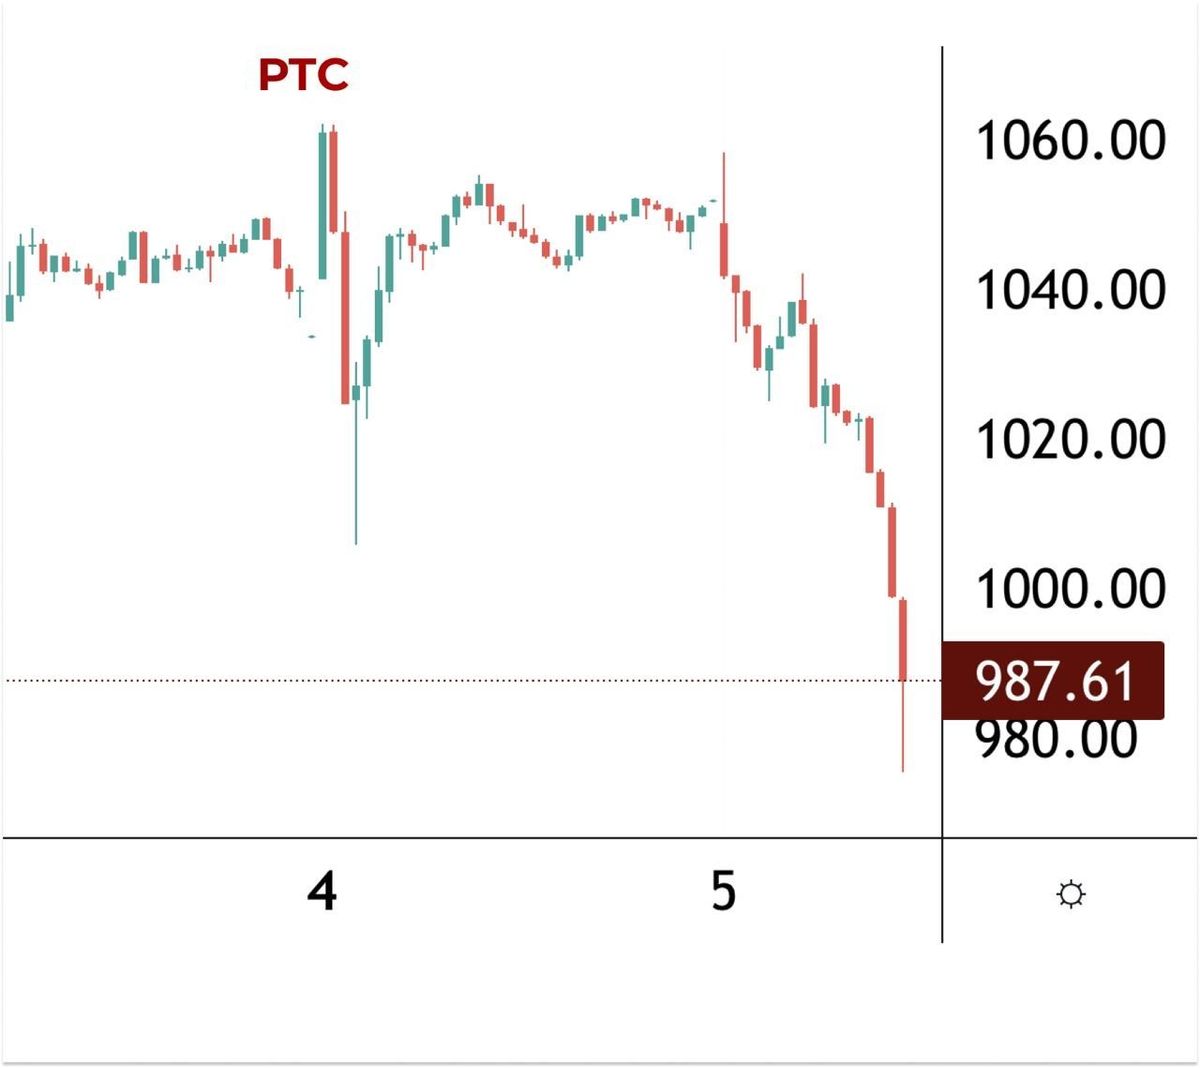 Russian market is down